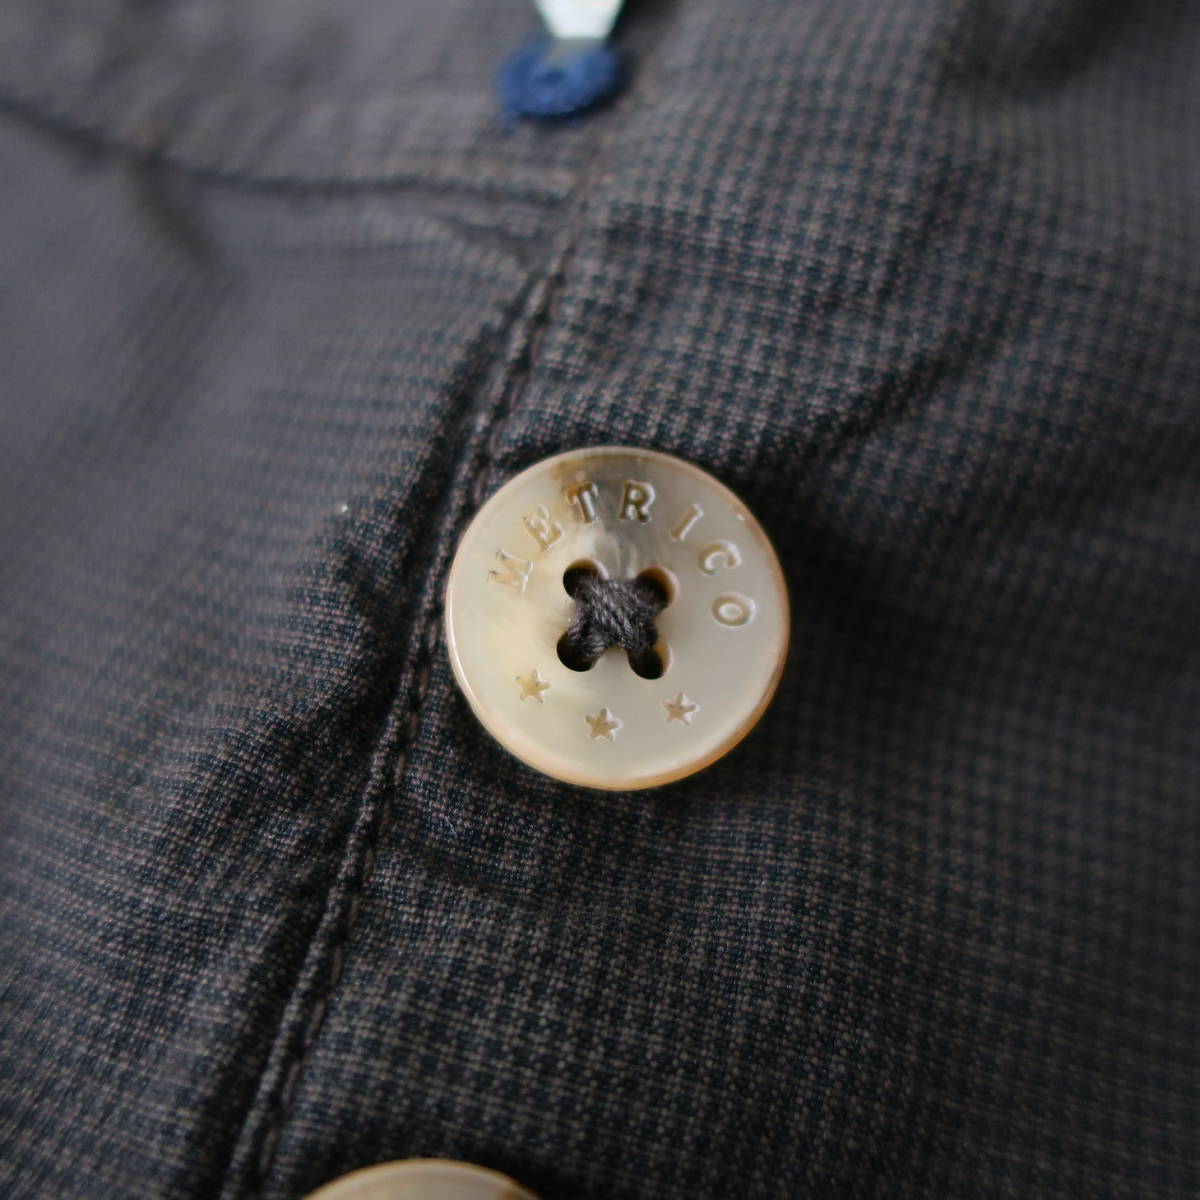  tag equipped METRICOme Toriko by G.T.A men's cotton pants chinos jeans slacks dark brown dense brown 54 XXL~XXXL 3L 4L